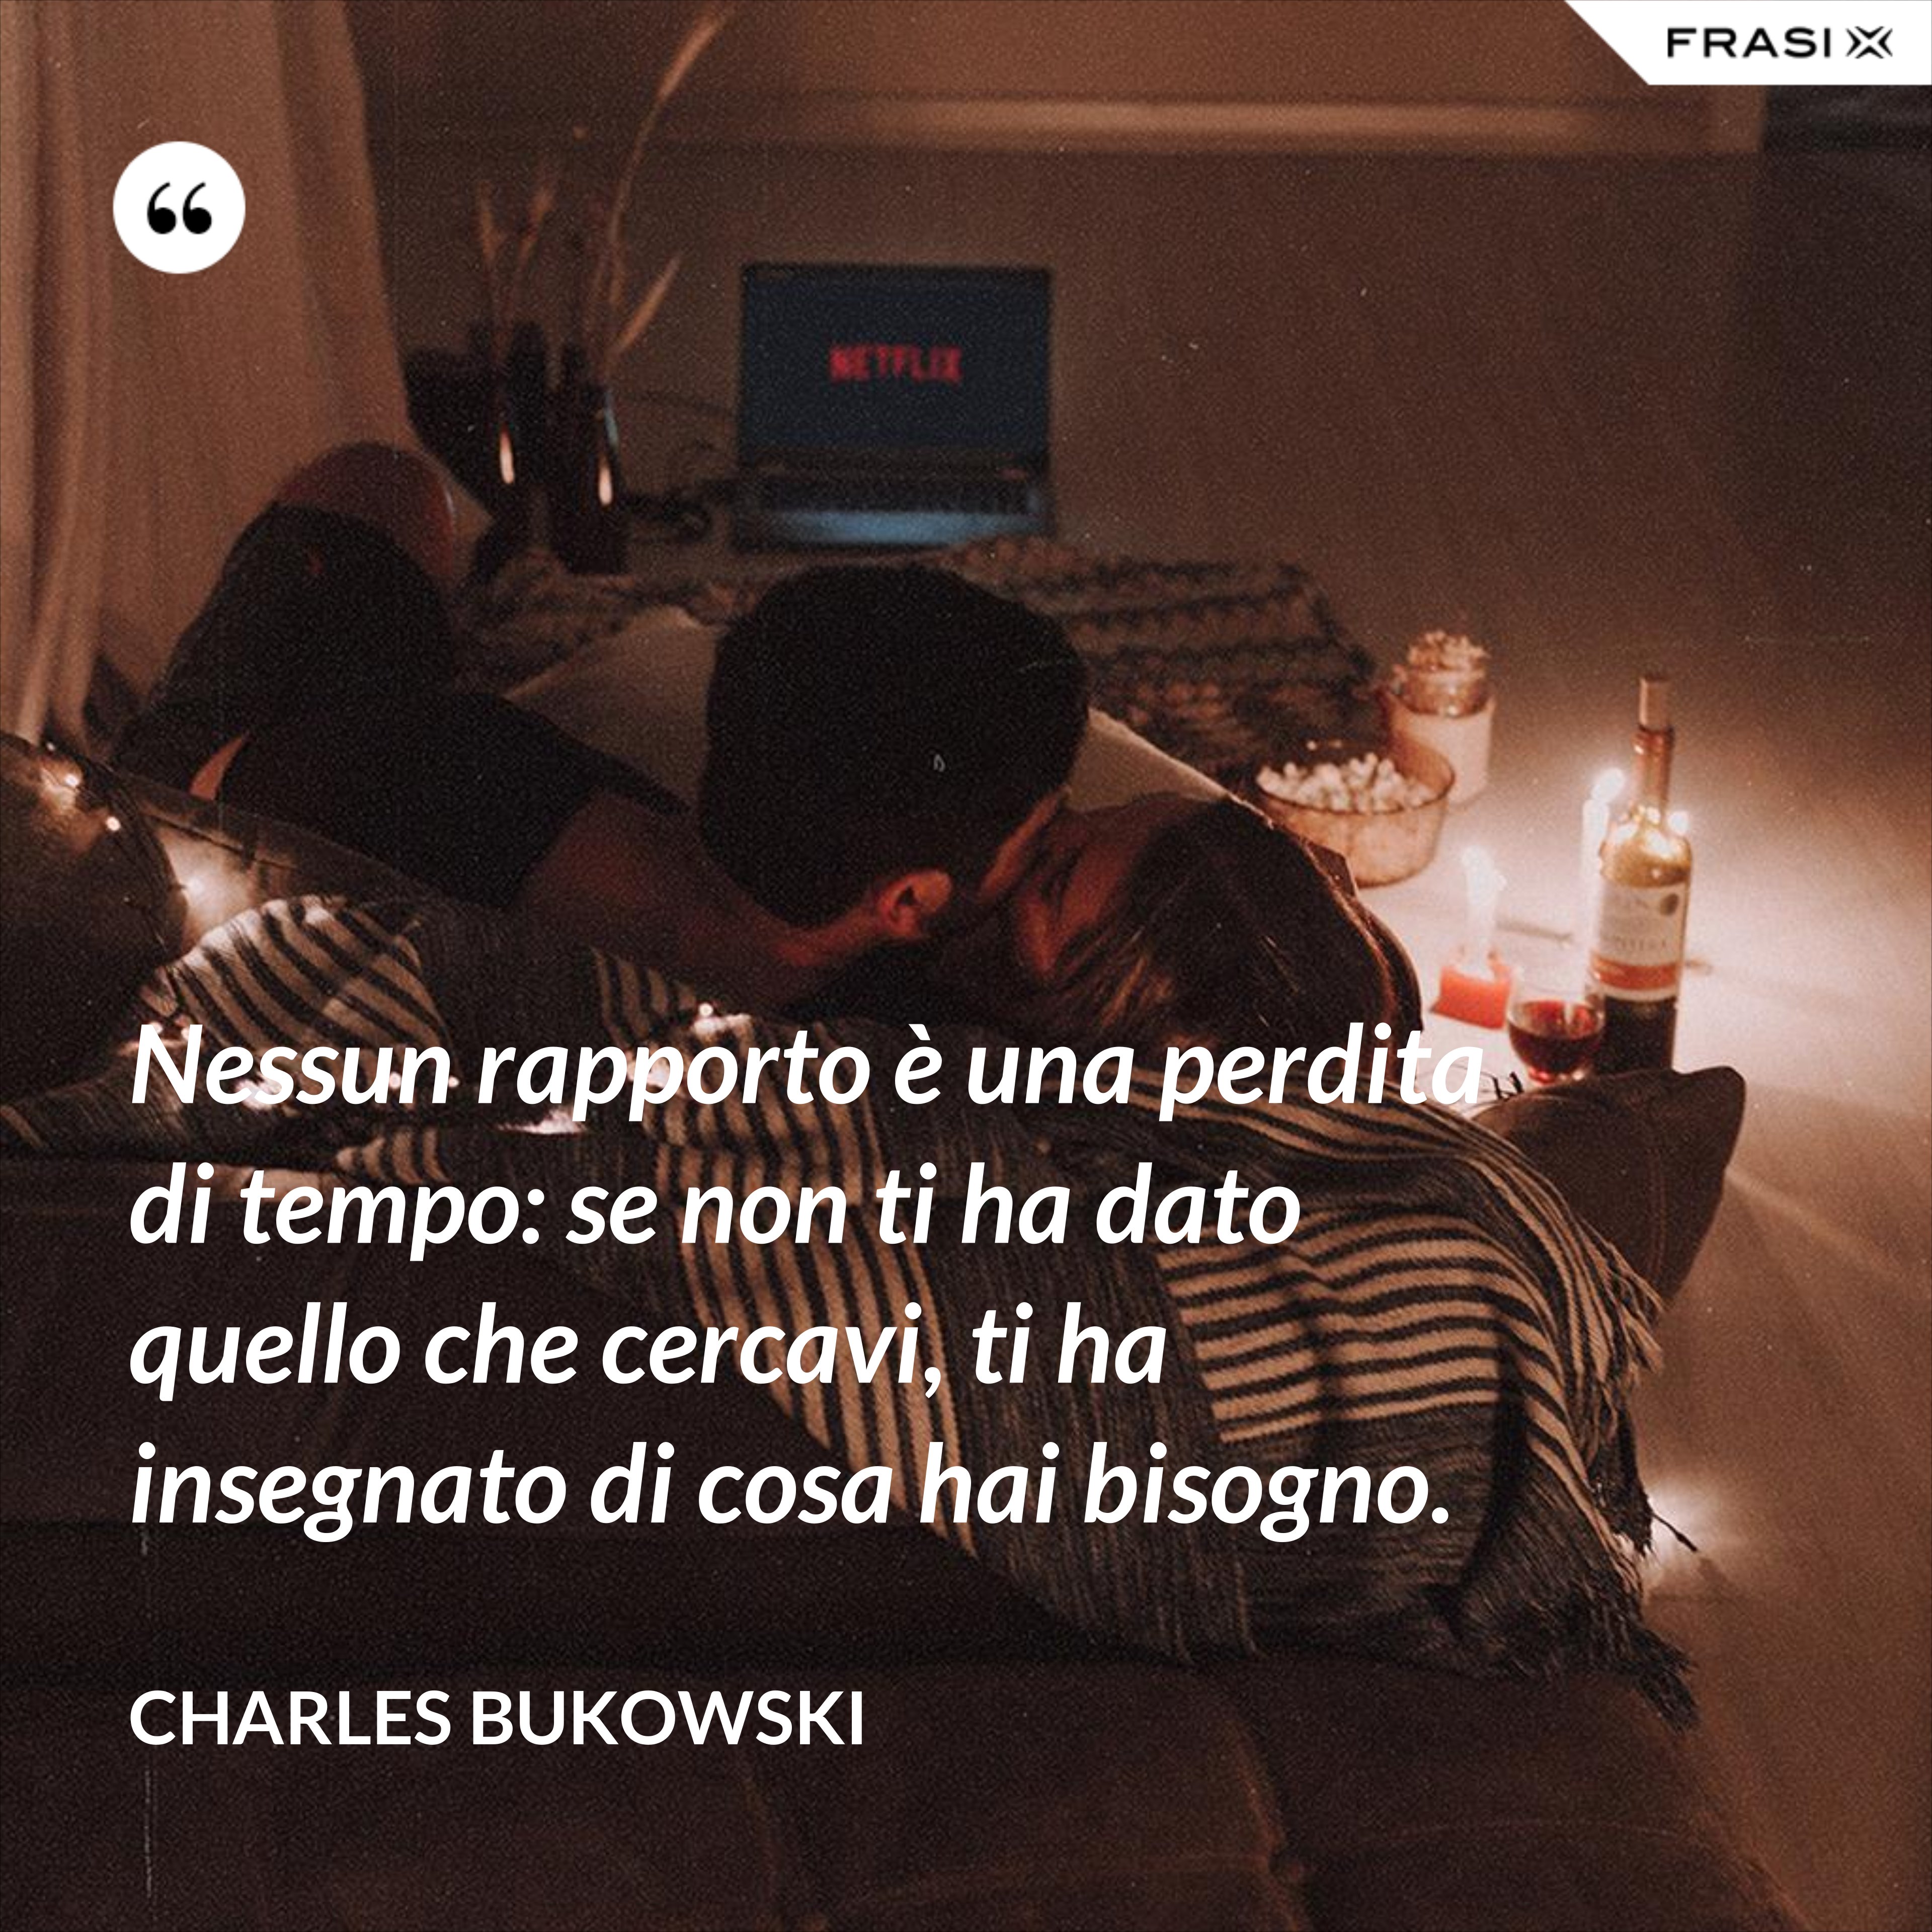 Nessun rapporto è una perdita di tempo: se non ti ha dato quello che cercavi, ti ha insegnato di cosa hai bisogno. - Charles Bukowski